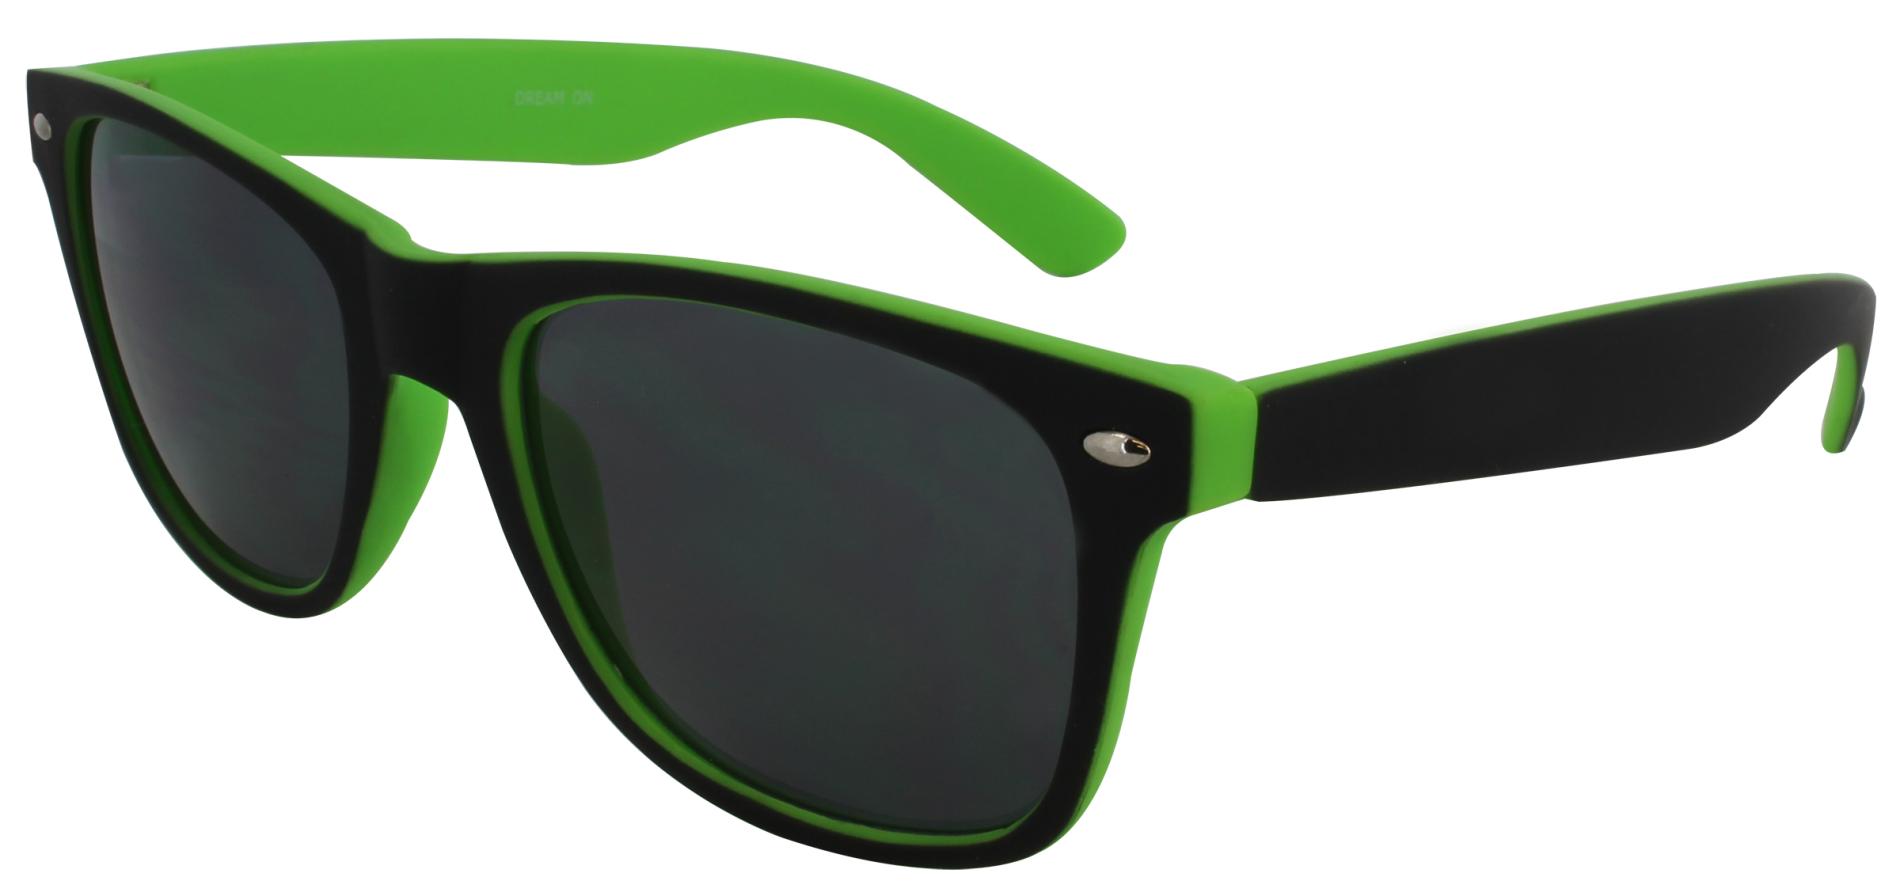 Amplify Women's Colorblock Retro-Inspired Sunglasses